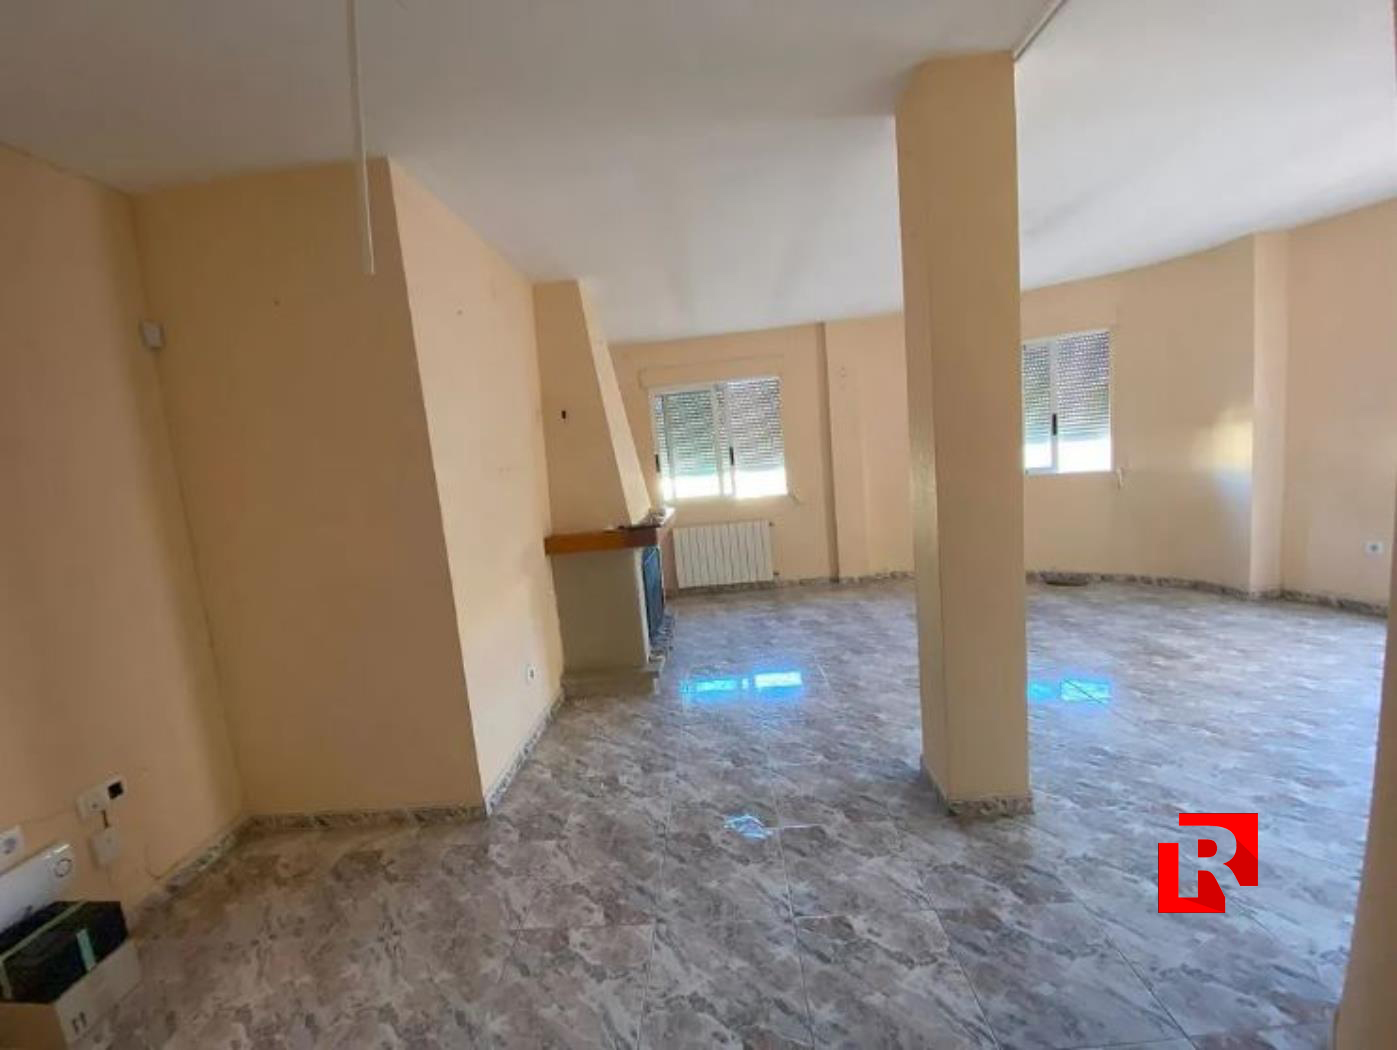 Villa à vendre dans le quartier résidentiel - La Nucia, à 9 km de Benidorm